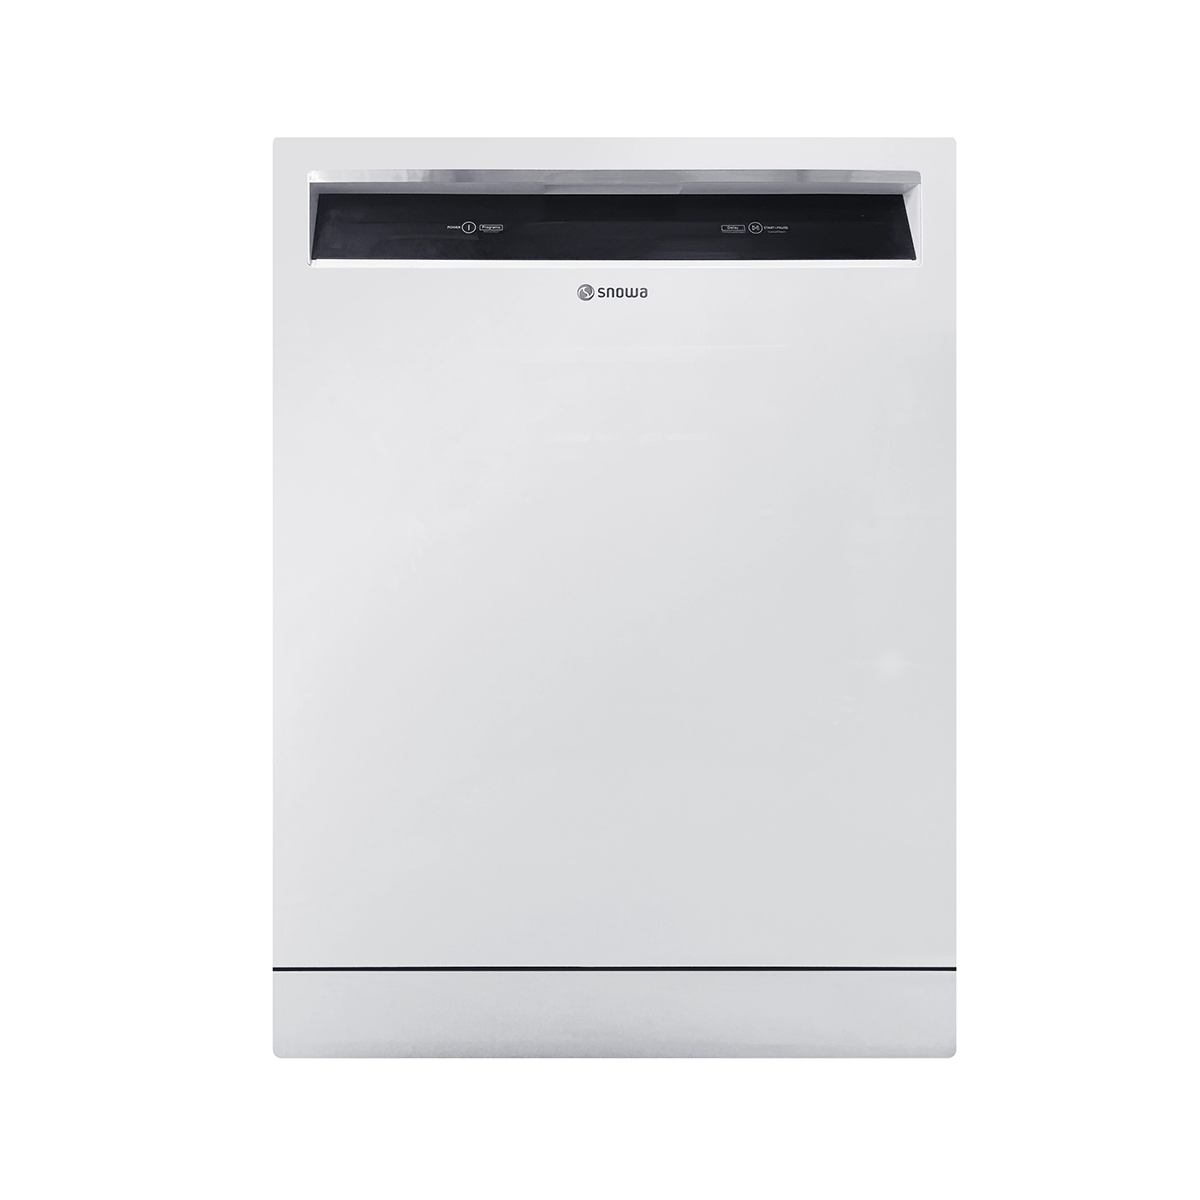 ماشین ظرفشویی اسنوا 13 نفره سری مومنتز مدل SDW-F353210-سفید